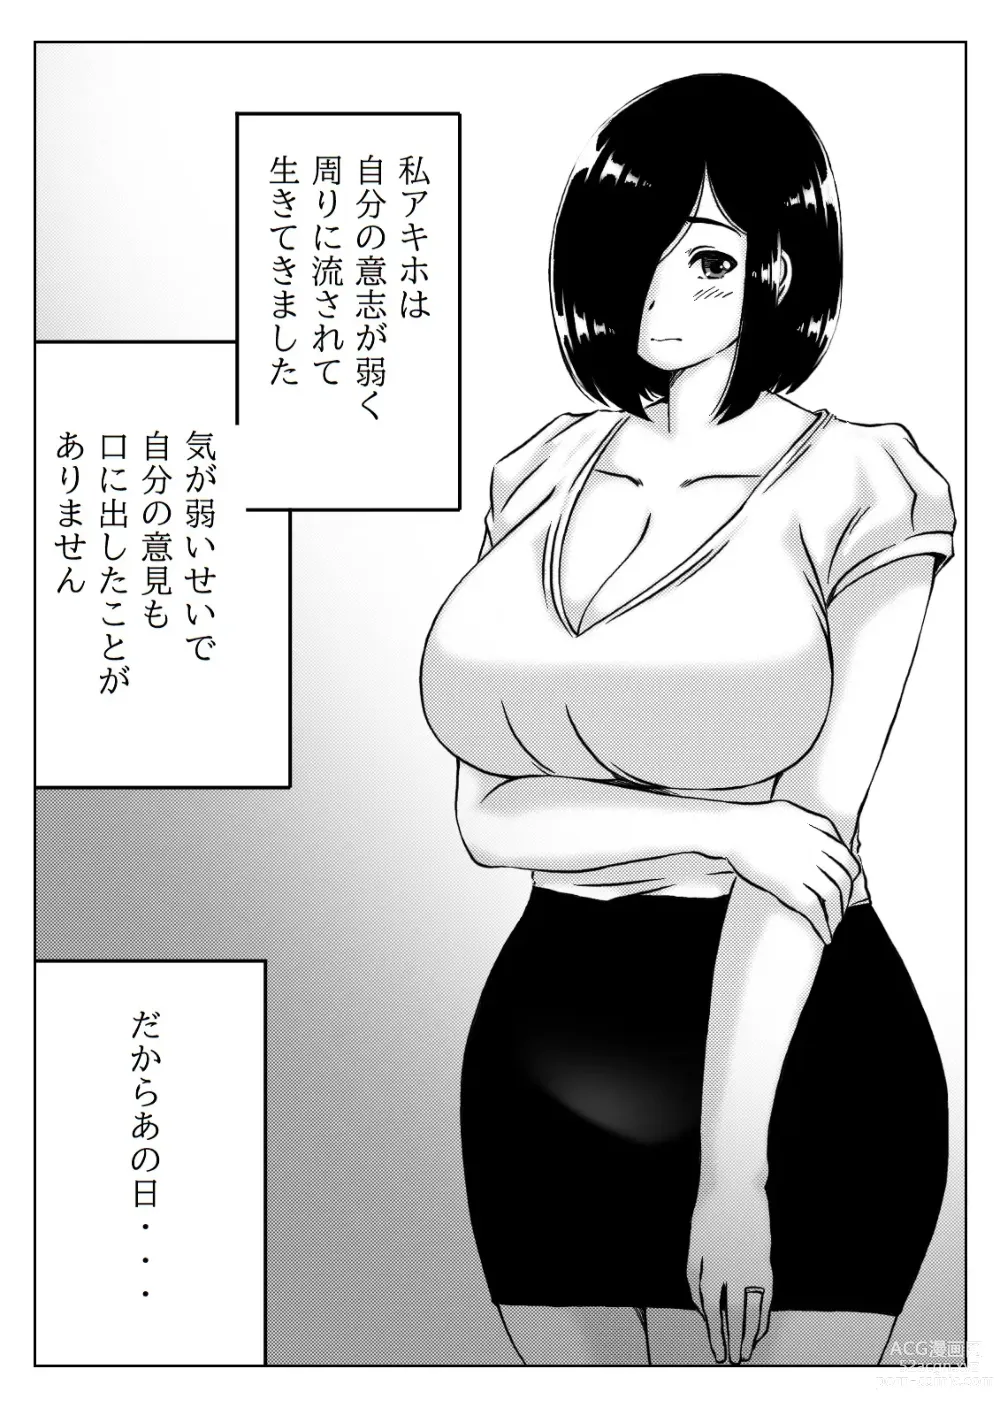 Page 2 of doujinshi Yowakinai Iinari Haha